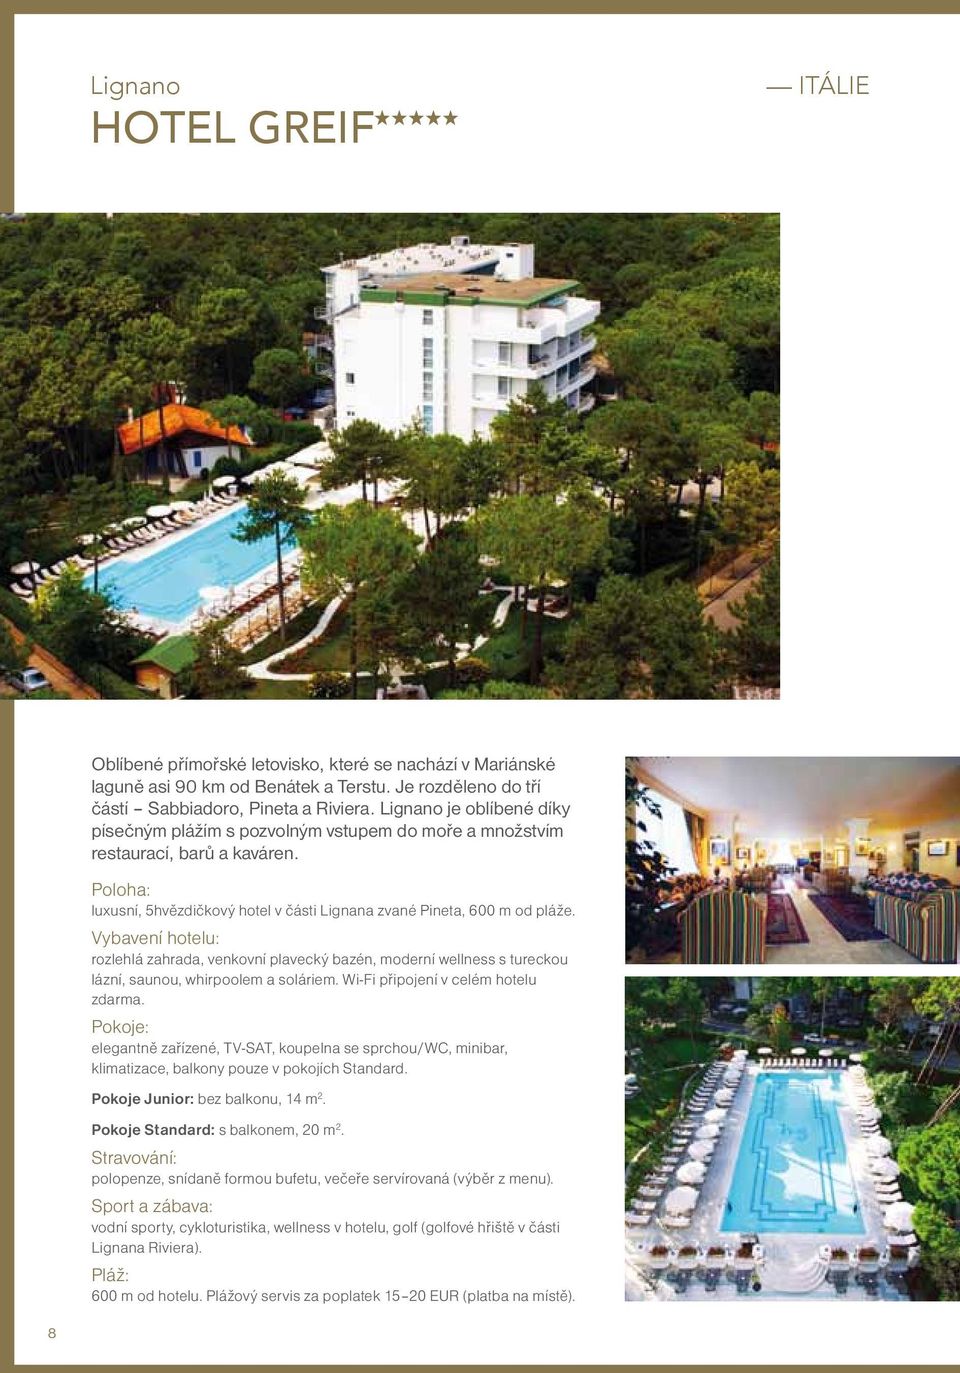 Vybavení hotelu: rozlehlá zahrada, venkovní plavecký bazén, moderní wellness s tureckou lázní, saunou, whirpoolem a soláriem. Wi-Fi připojení v celém hotelu zdarma.